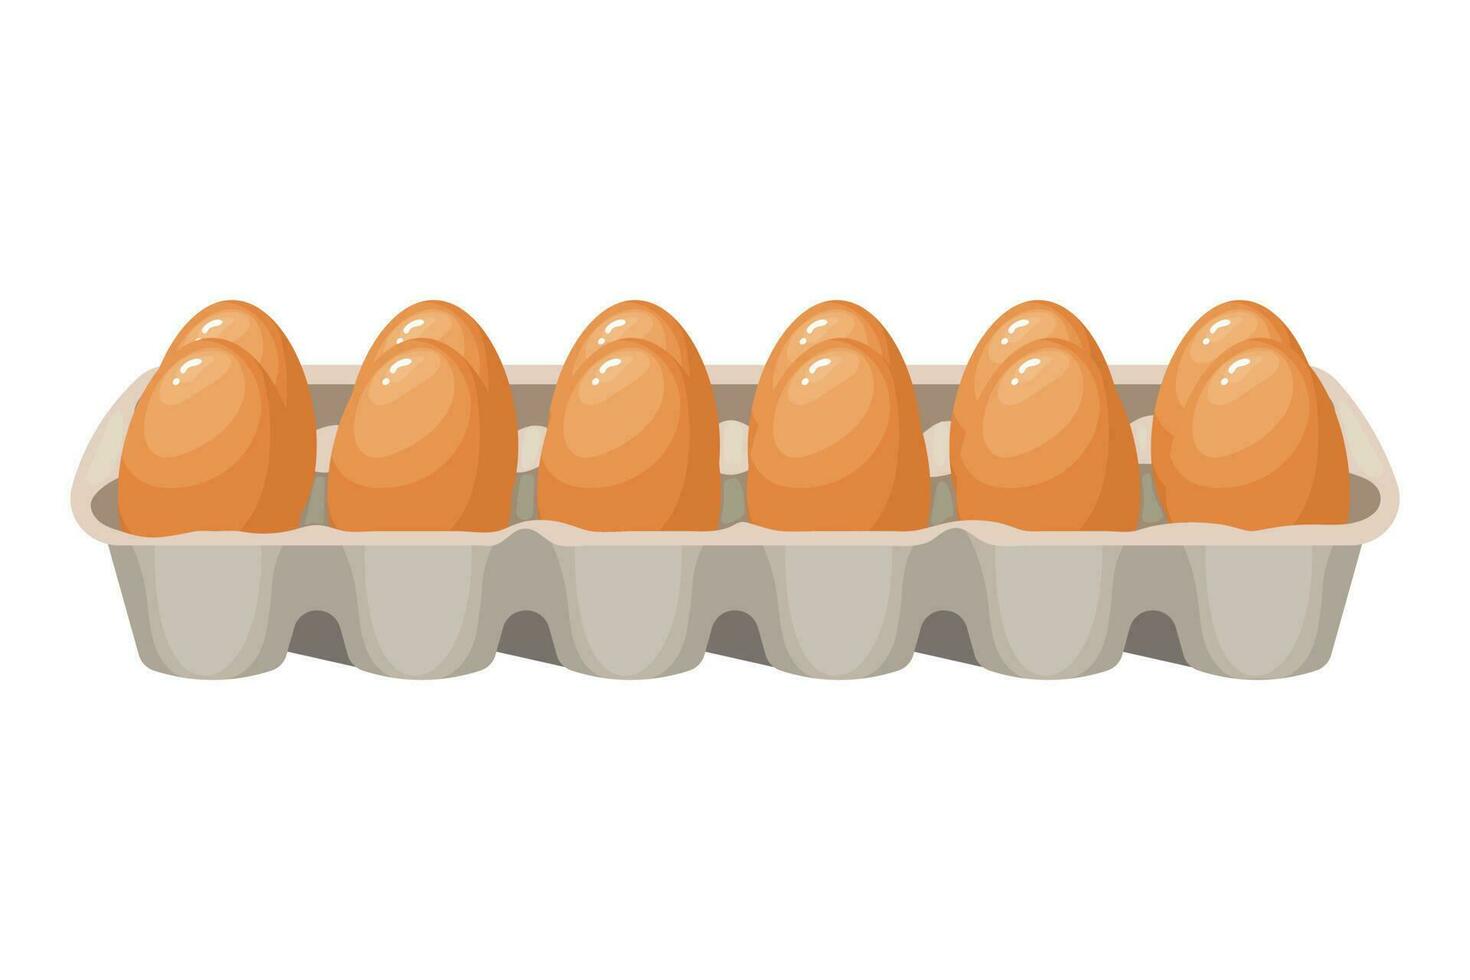 färsk kyckling ägg i en kartong behållare, ägg i en låda. mat illustration, vektor